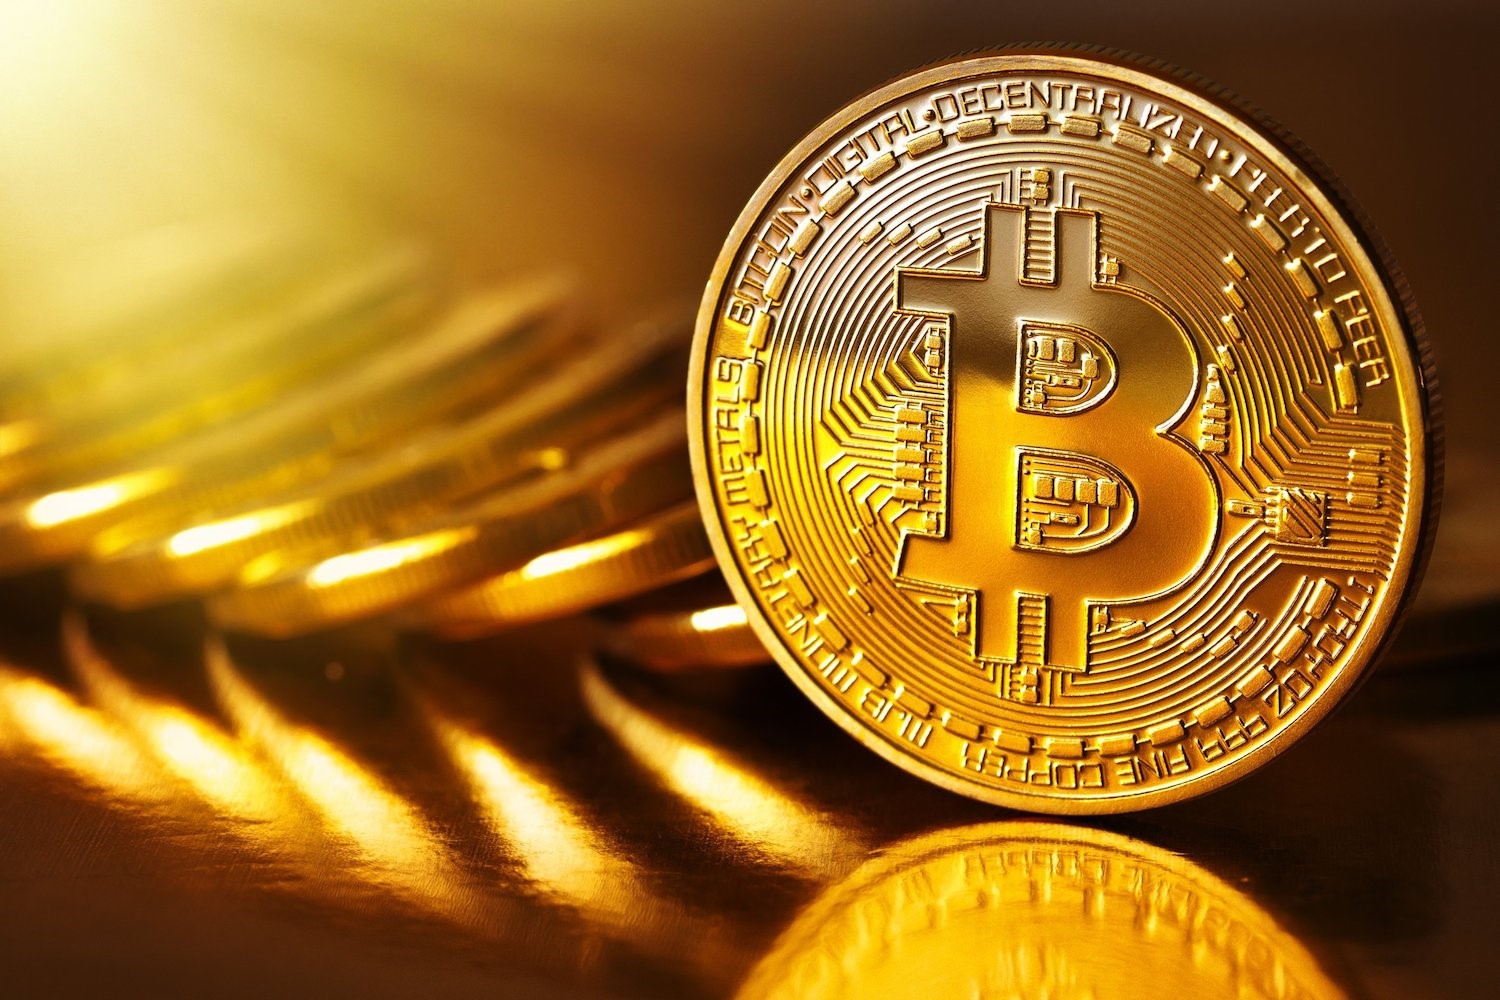 VanEck lanserar fysiskt uppbackad Bitcoin ETN på Deutsche Börse Xetra